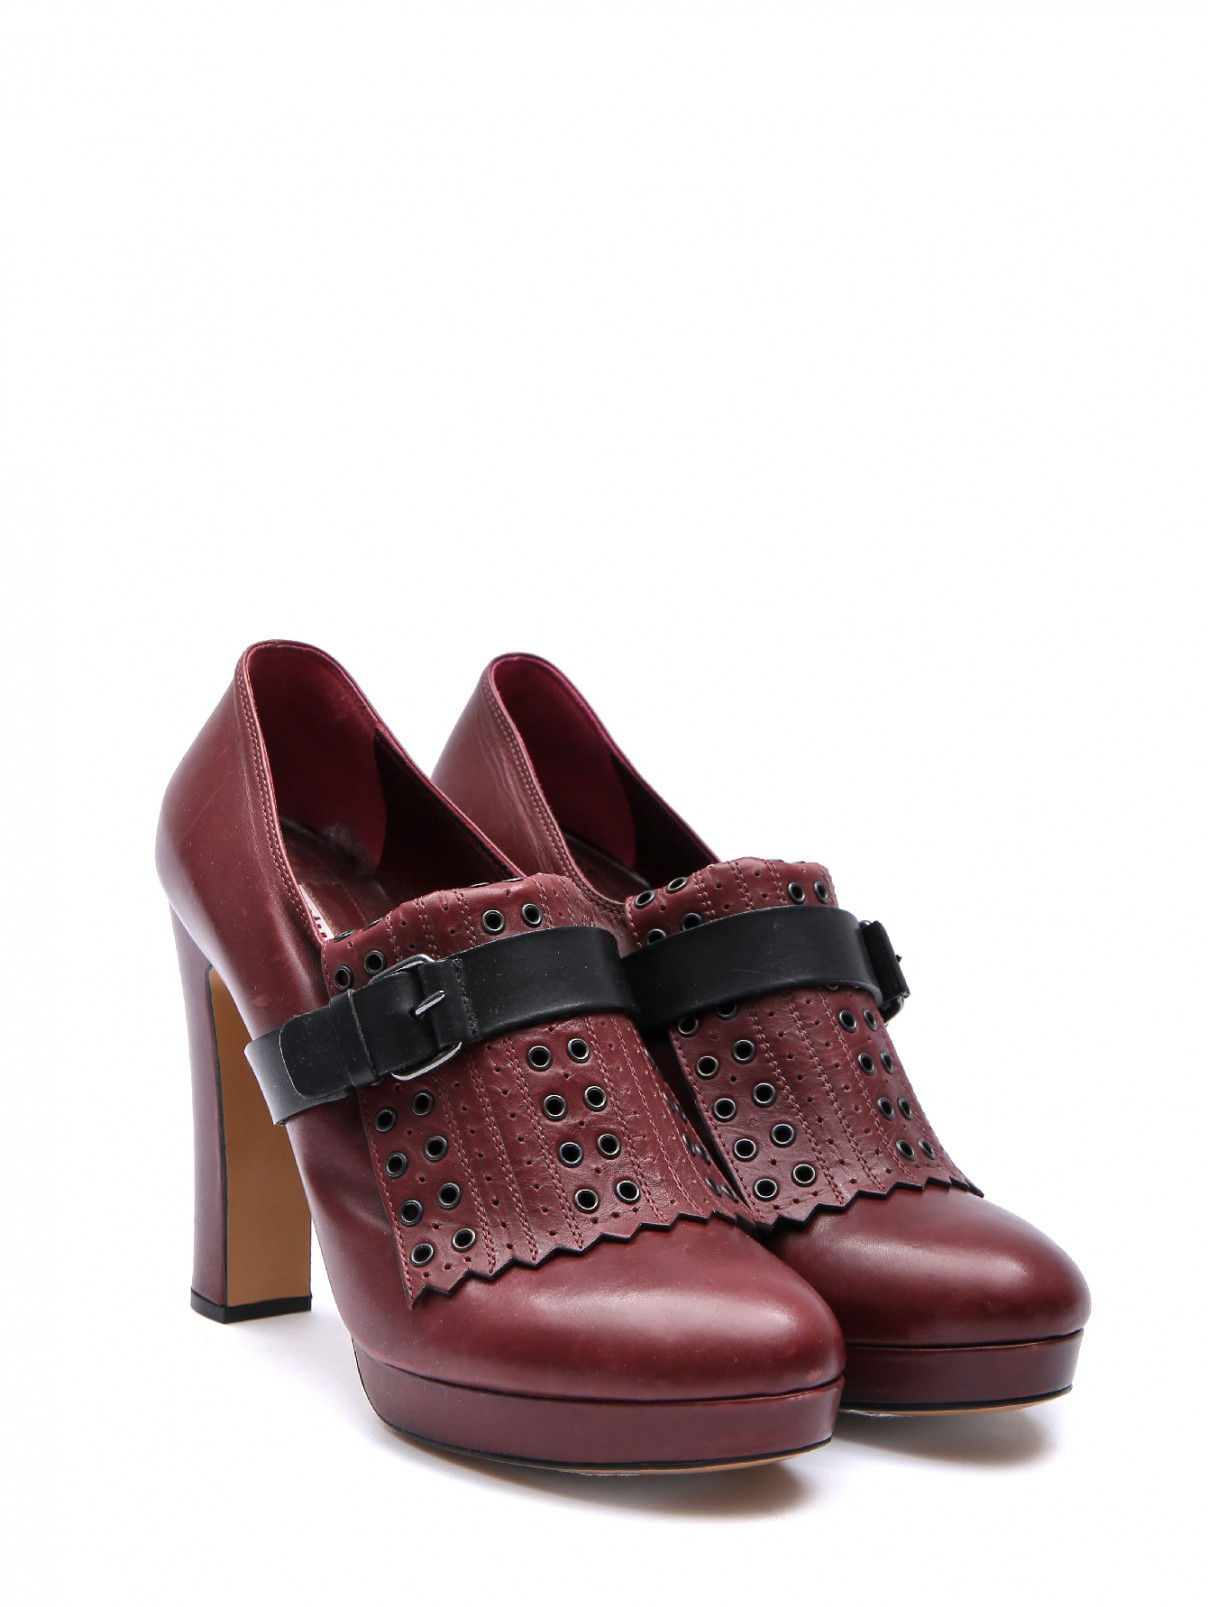 Туфли из кожи с контрастной отделкой Antonio Marras  –  Общий вид  – Цвет:  Красный